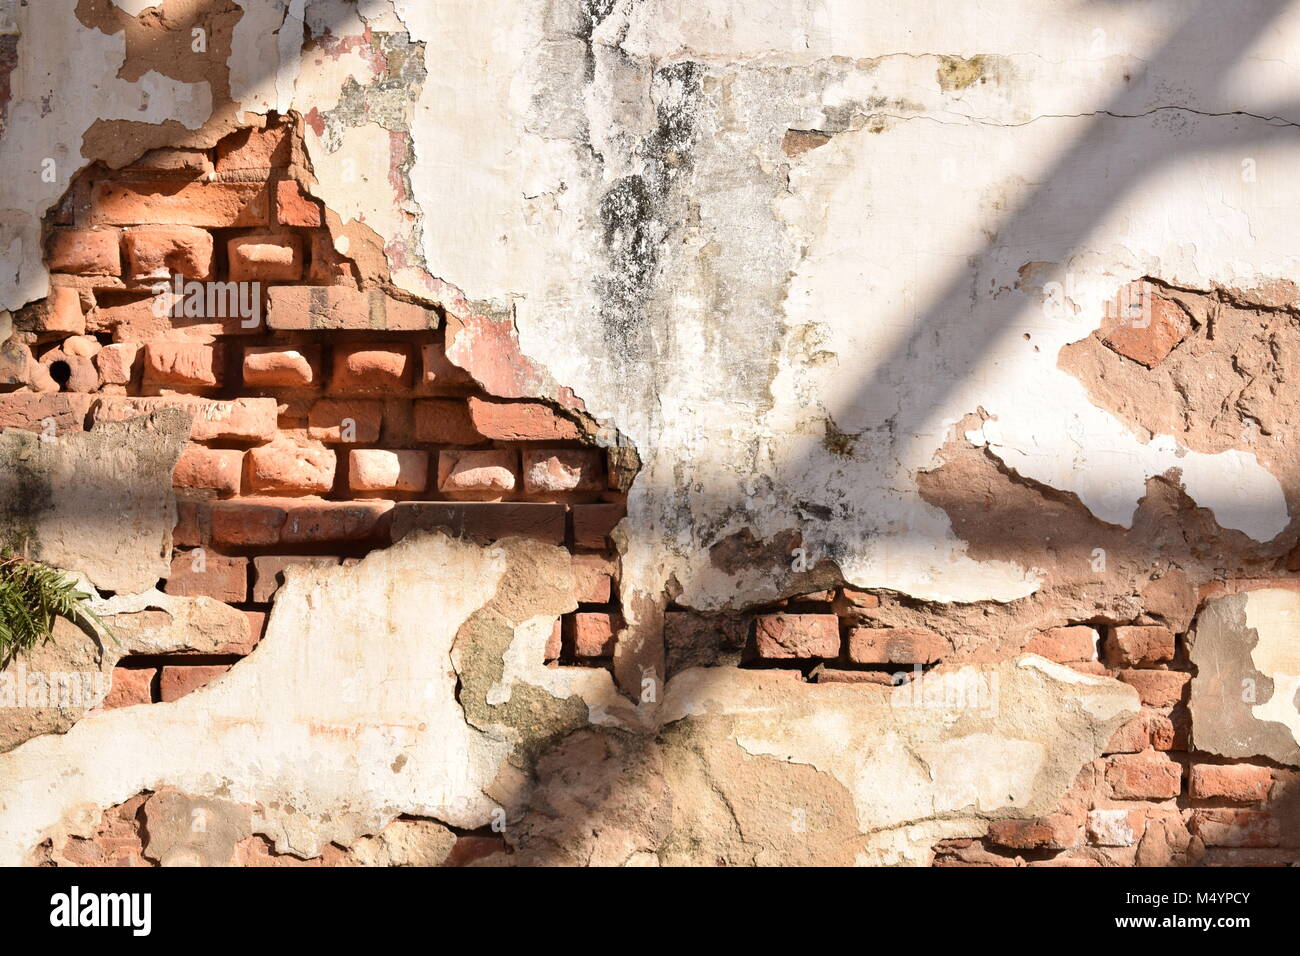 Deteriorating brick wall Stock Photo